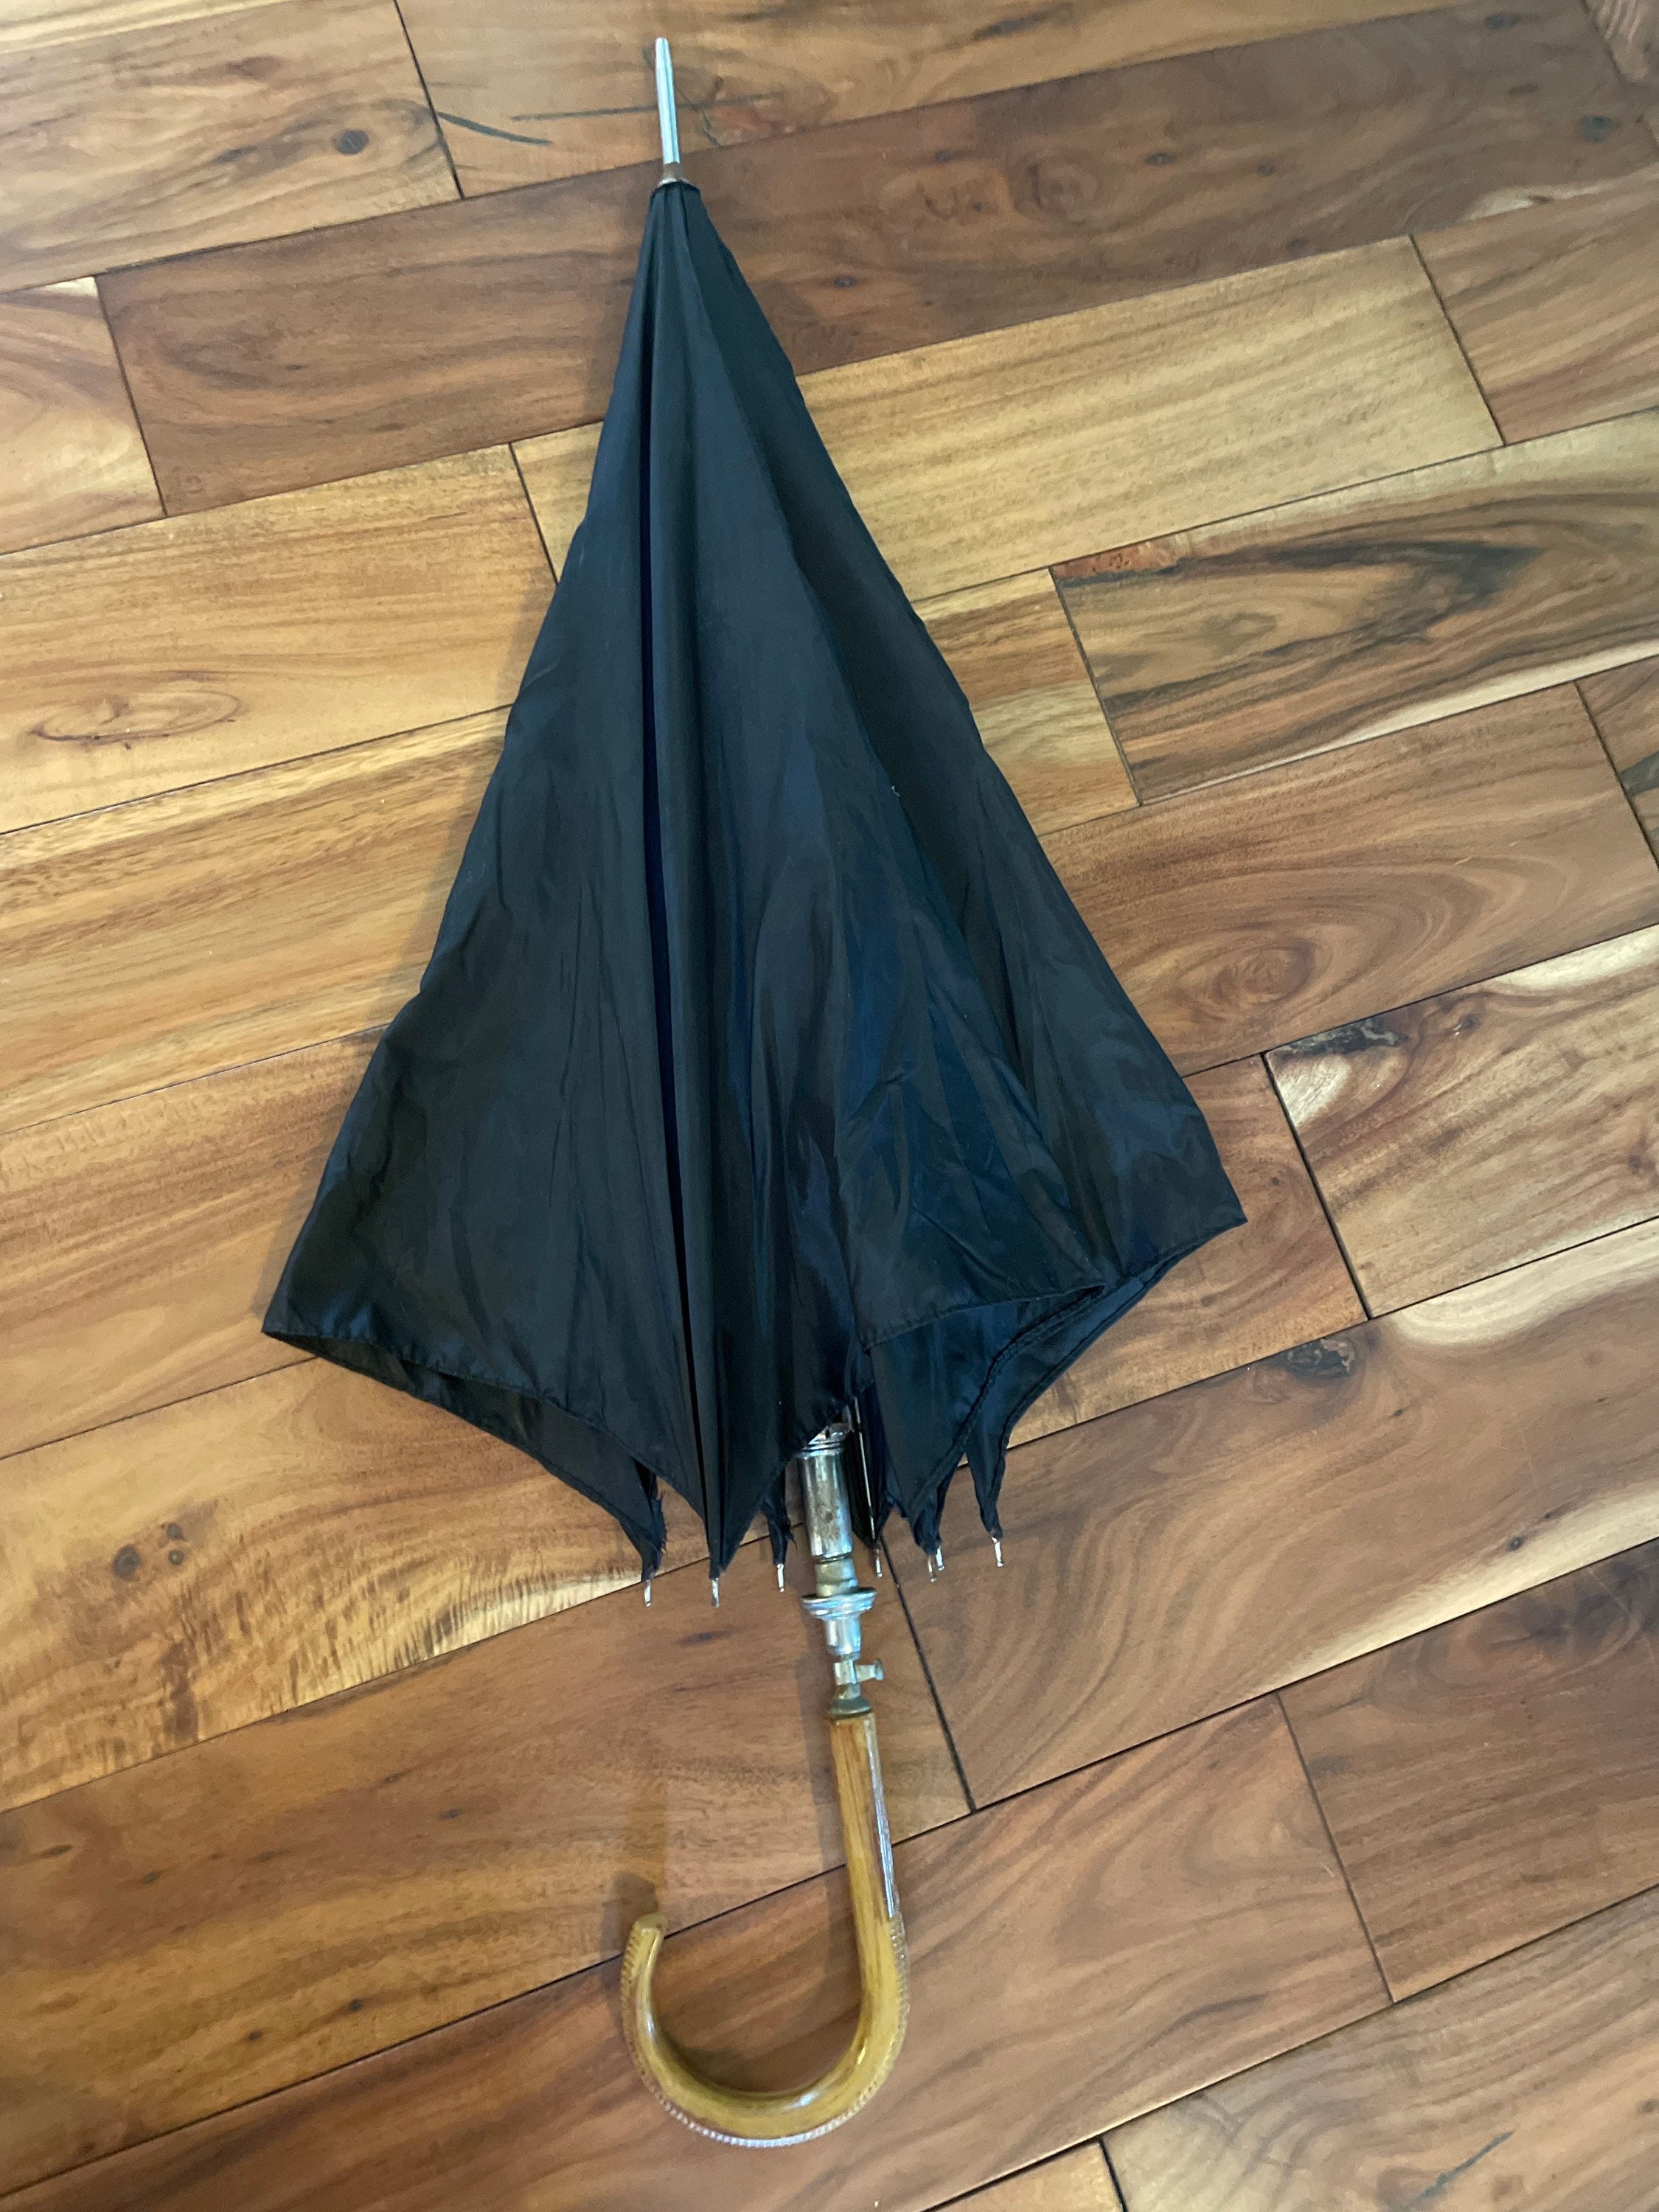 Wooden Handle Umbrella 